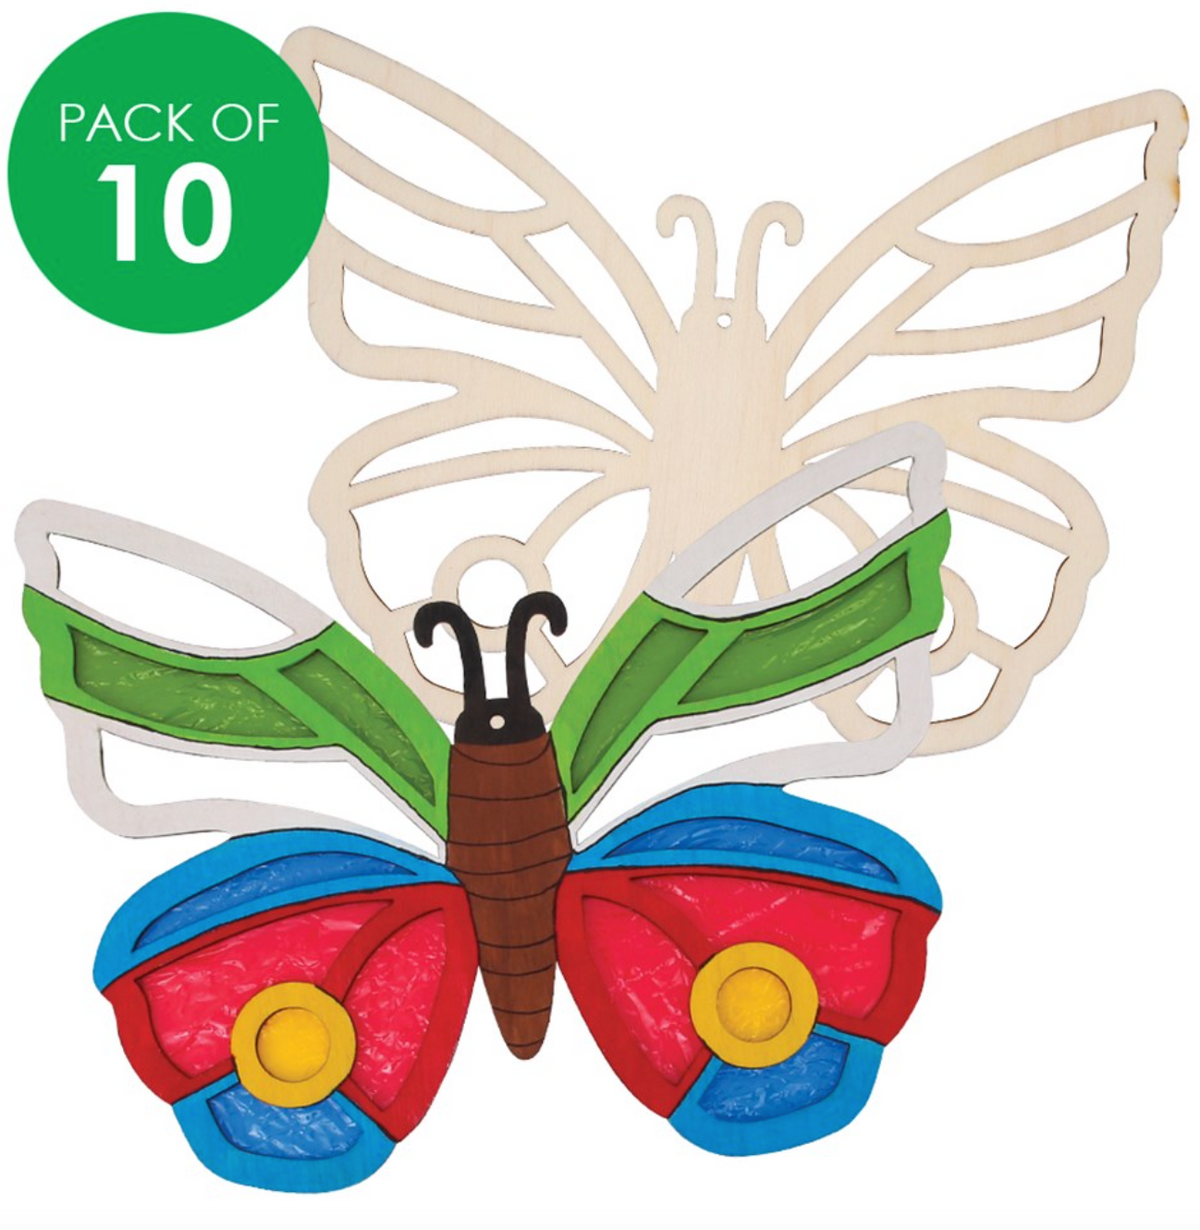 Wooden Sun Catcher Frames - Butterfly - Pack of 10